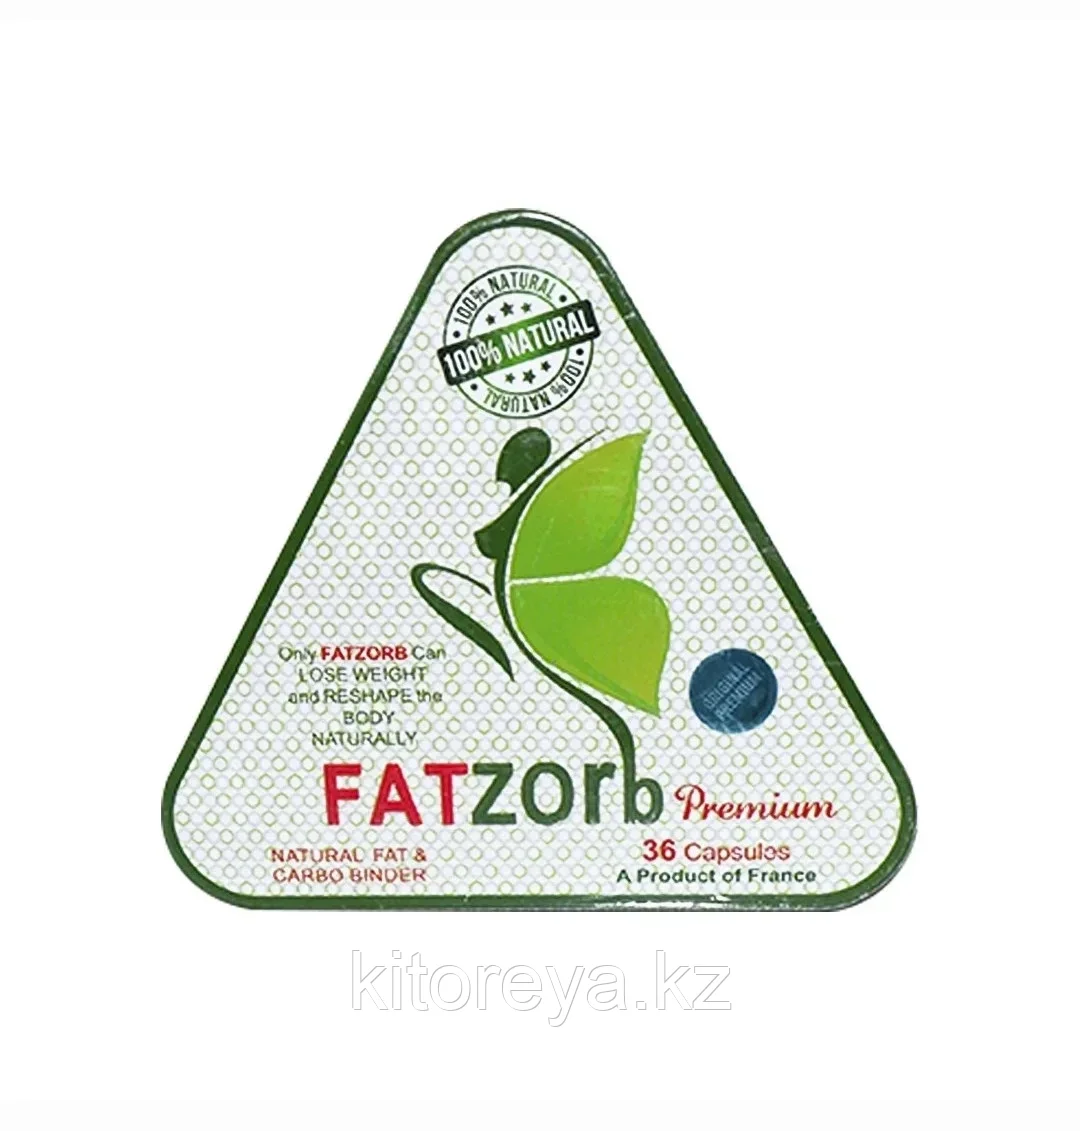 Fatz- orb Premium ( Фатpзорб Премиум ) ( треугольный белый ) капсулы для похудения 36 капсул